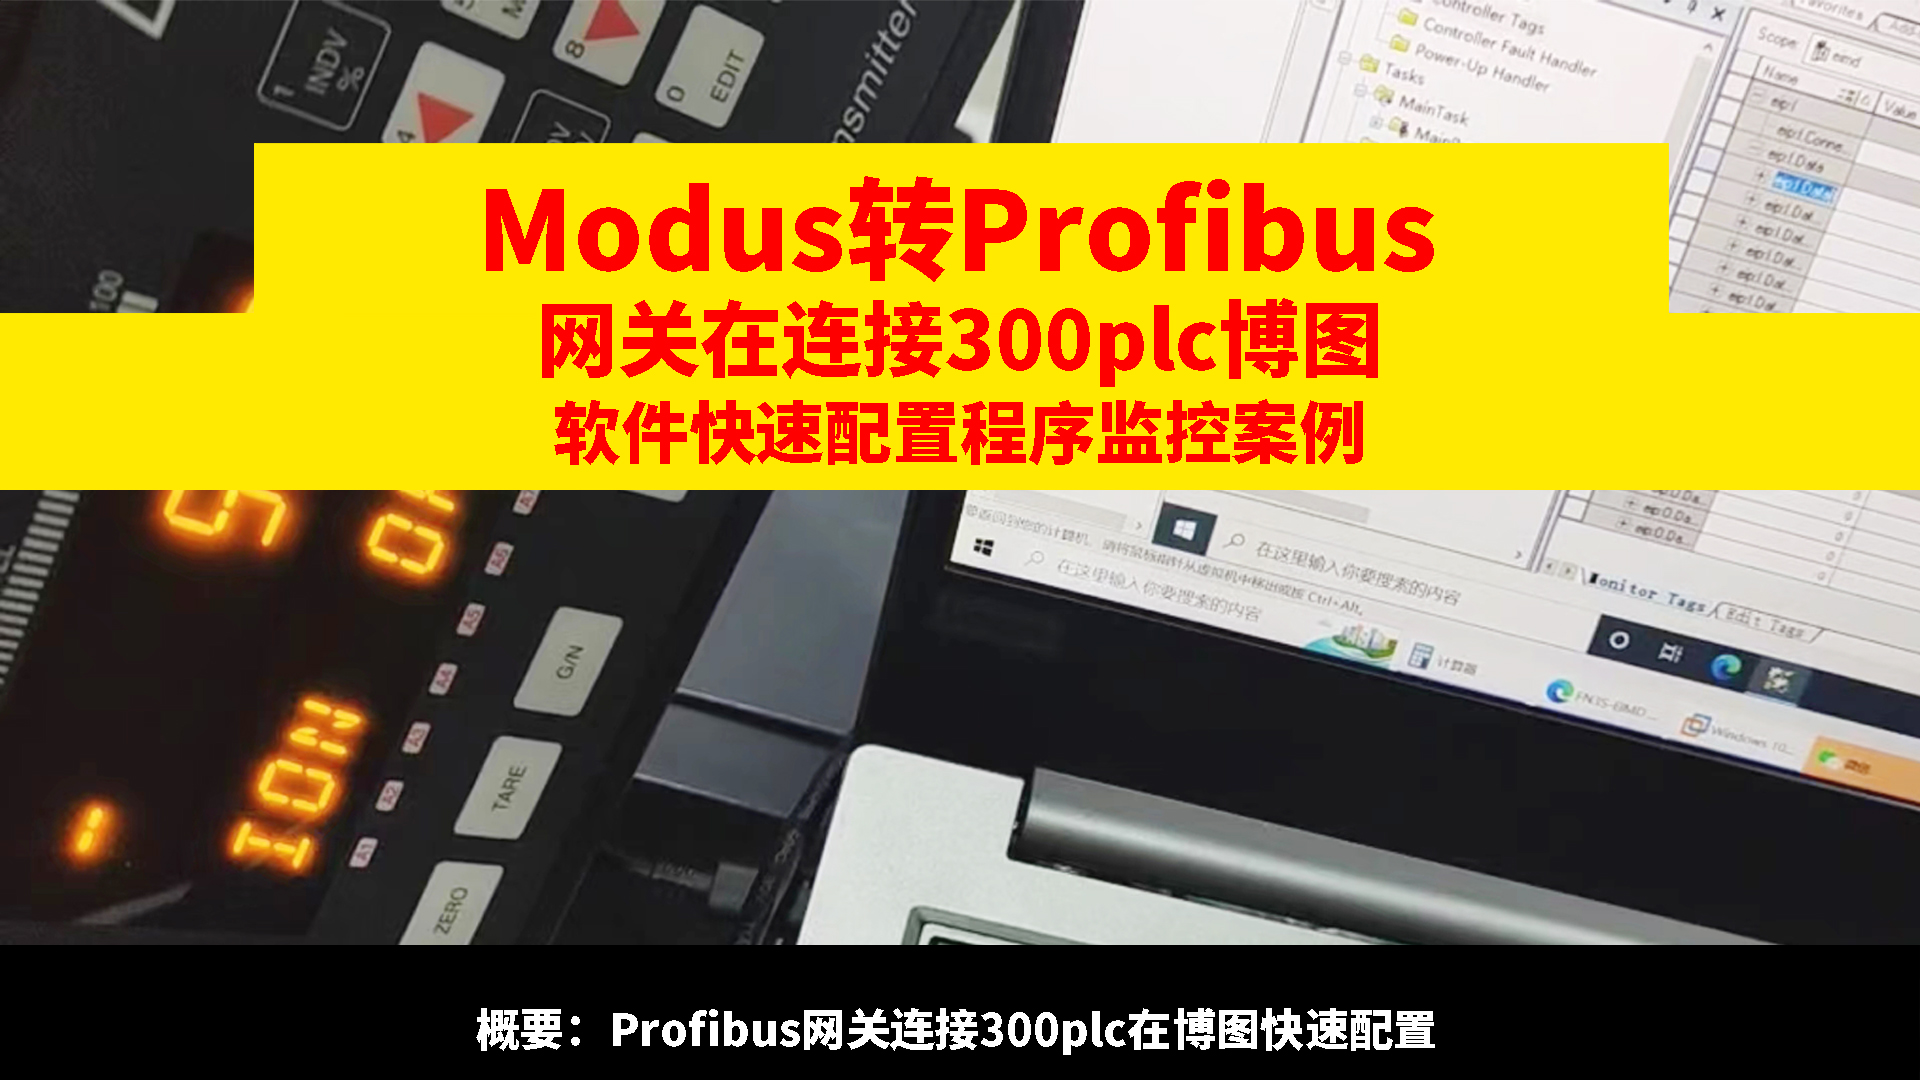 Modbus转Profibus网关连接300 PLC如何在博图配置步骤#485Modbus转Profibus 